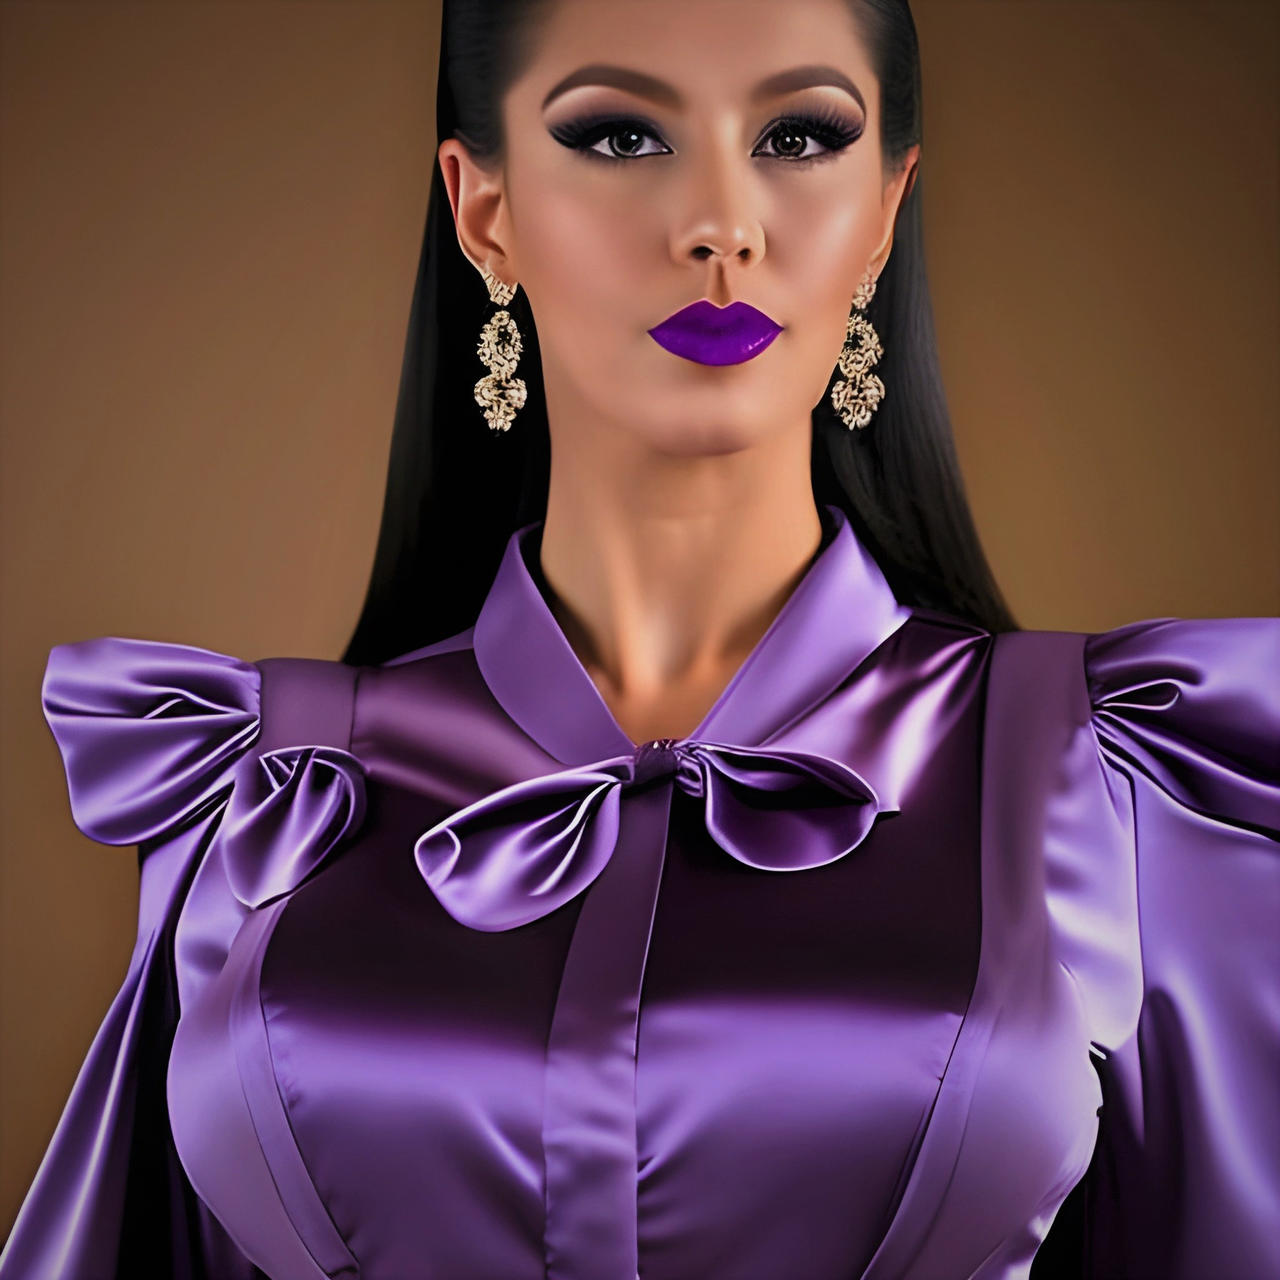 purple satin blouse by Francheskablase on DeviantArt